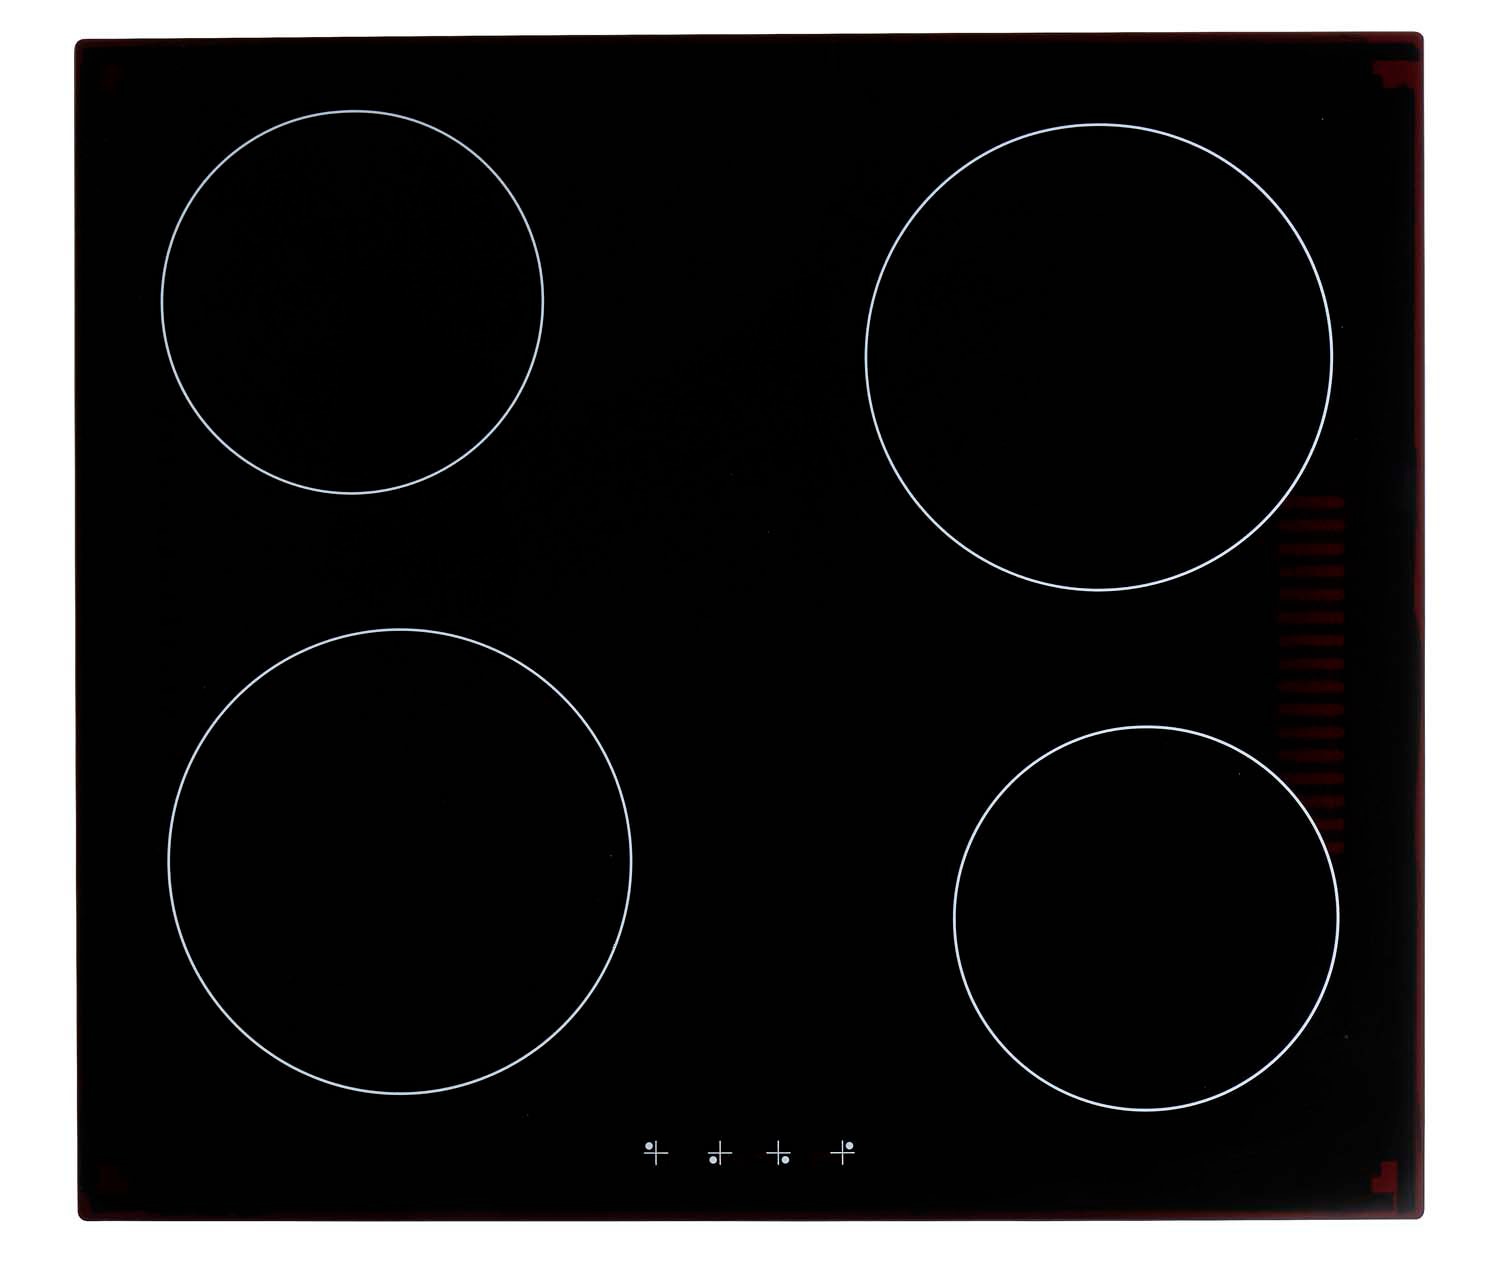 HELD MÖBEL Küchenzeile »Mailand«, mit Elektrogeräten, Breite 270 cm